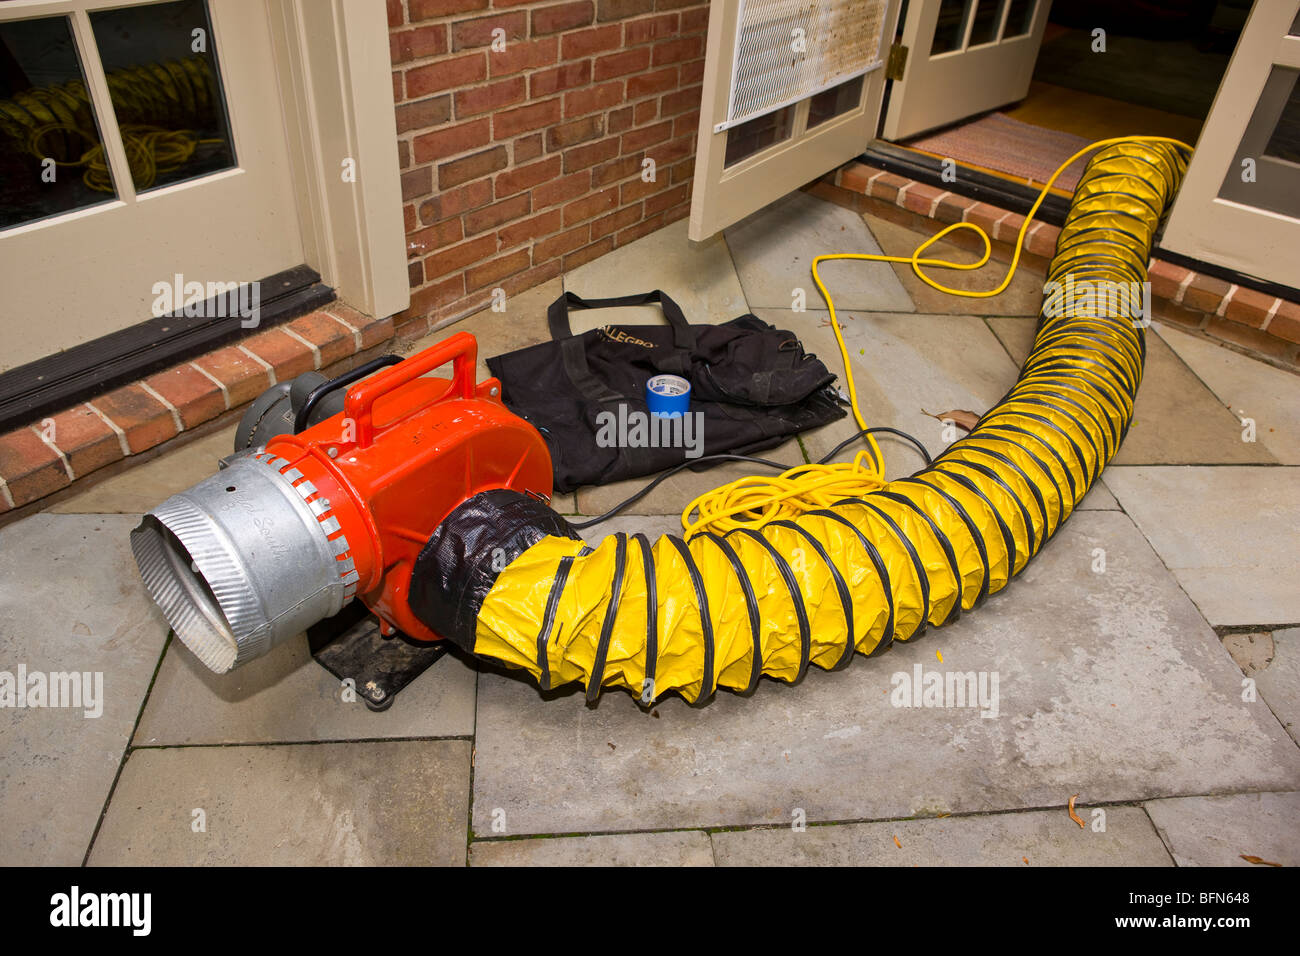 ARLINGTON, VIRGINIA, USA - Surpresseur attaché à étage vent dutring le nettoyage dans la maison. Banque D'Images